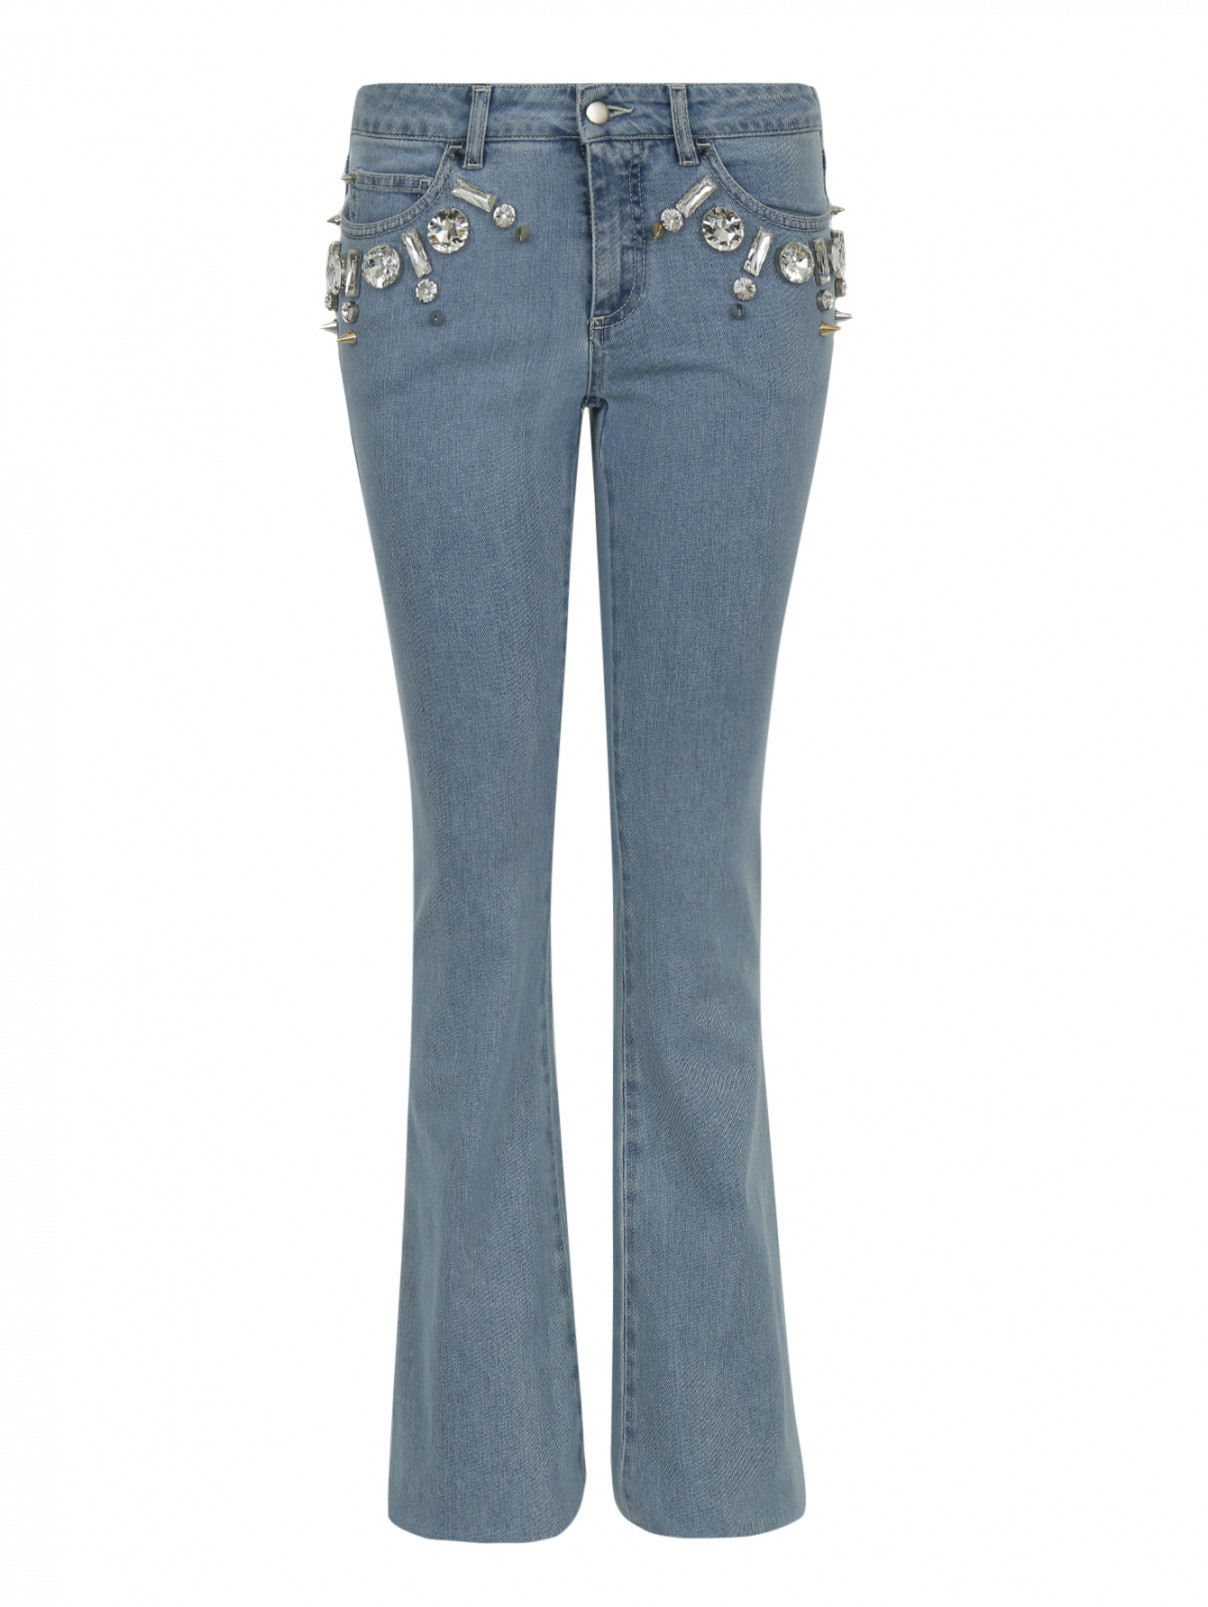 Расклешенные джинсы с декоративной отделкой из кристаллов Emanuel Ungaro  –  Общий вид  – Цвет:  Синий